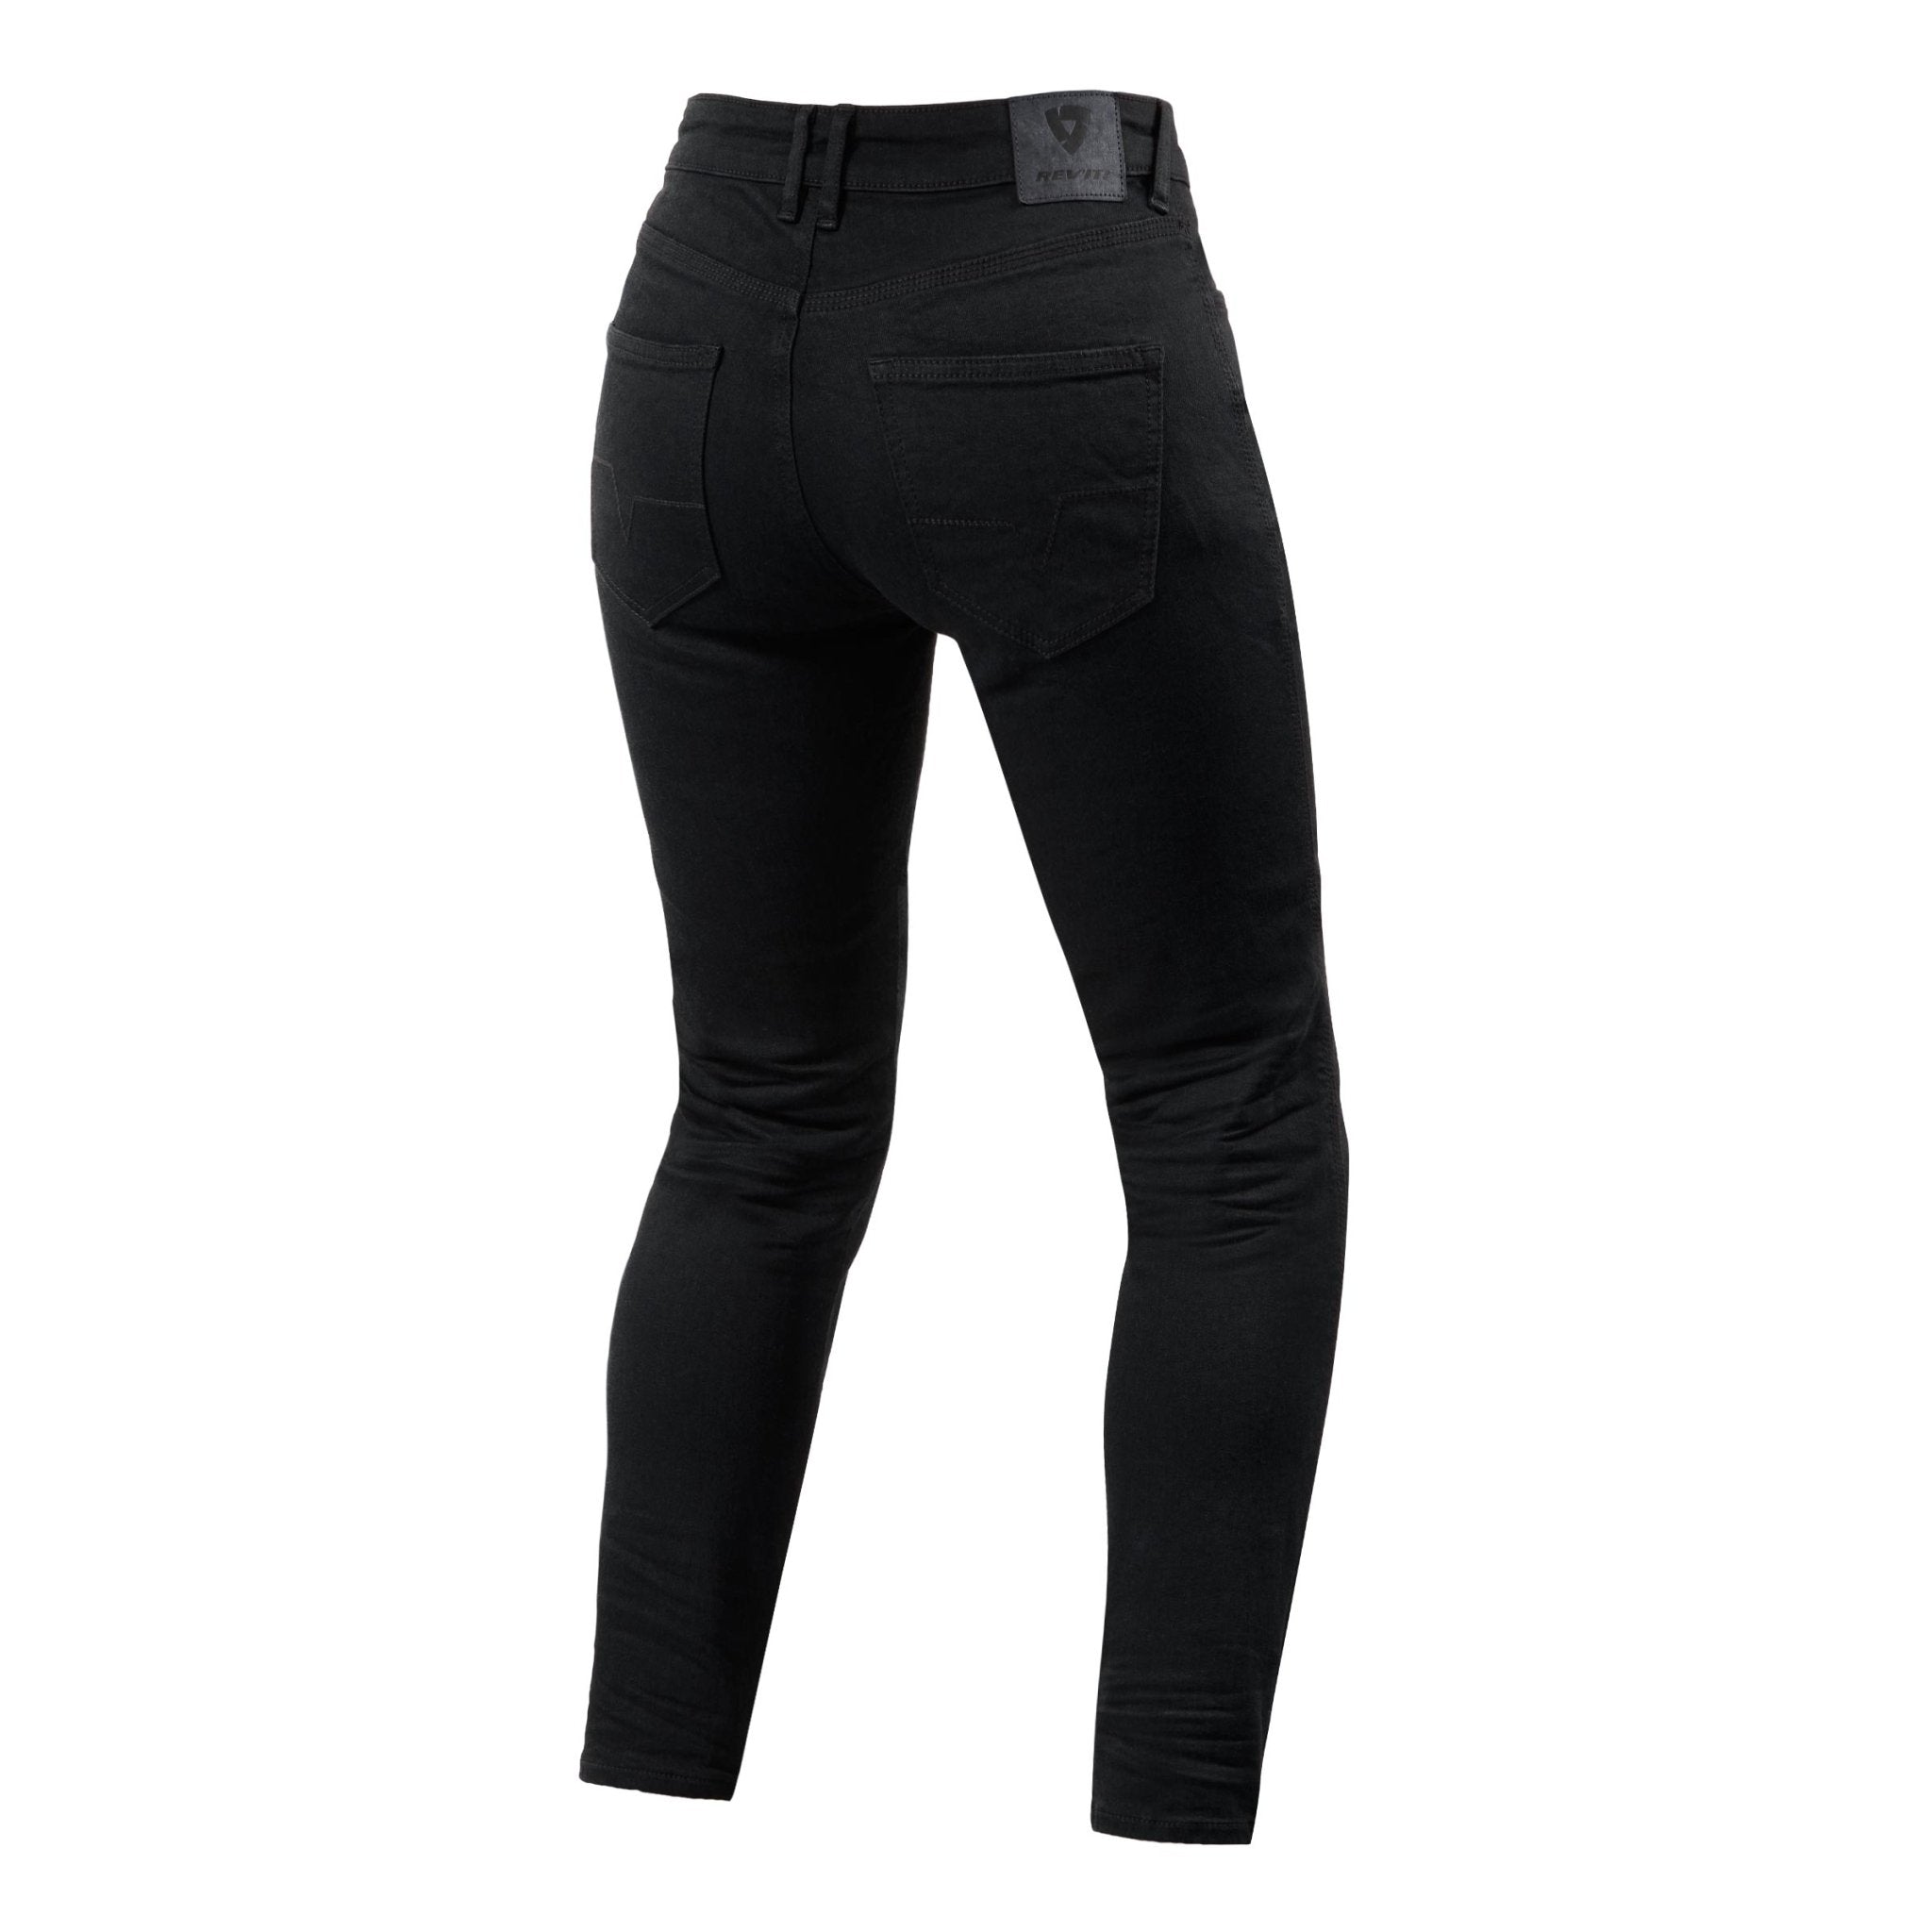 REV'IT! | Maple 2 Ladies SK Jeans - Black - Women's Pants - Peak Moto